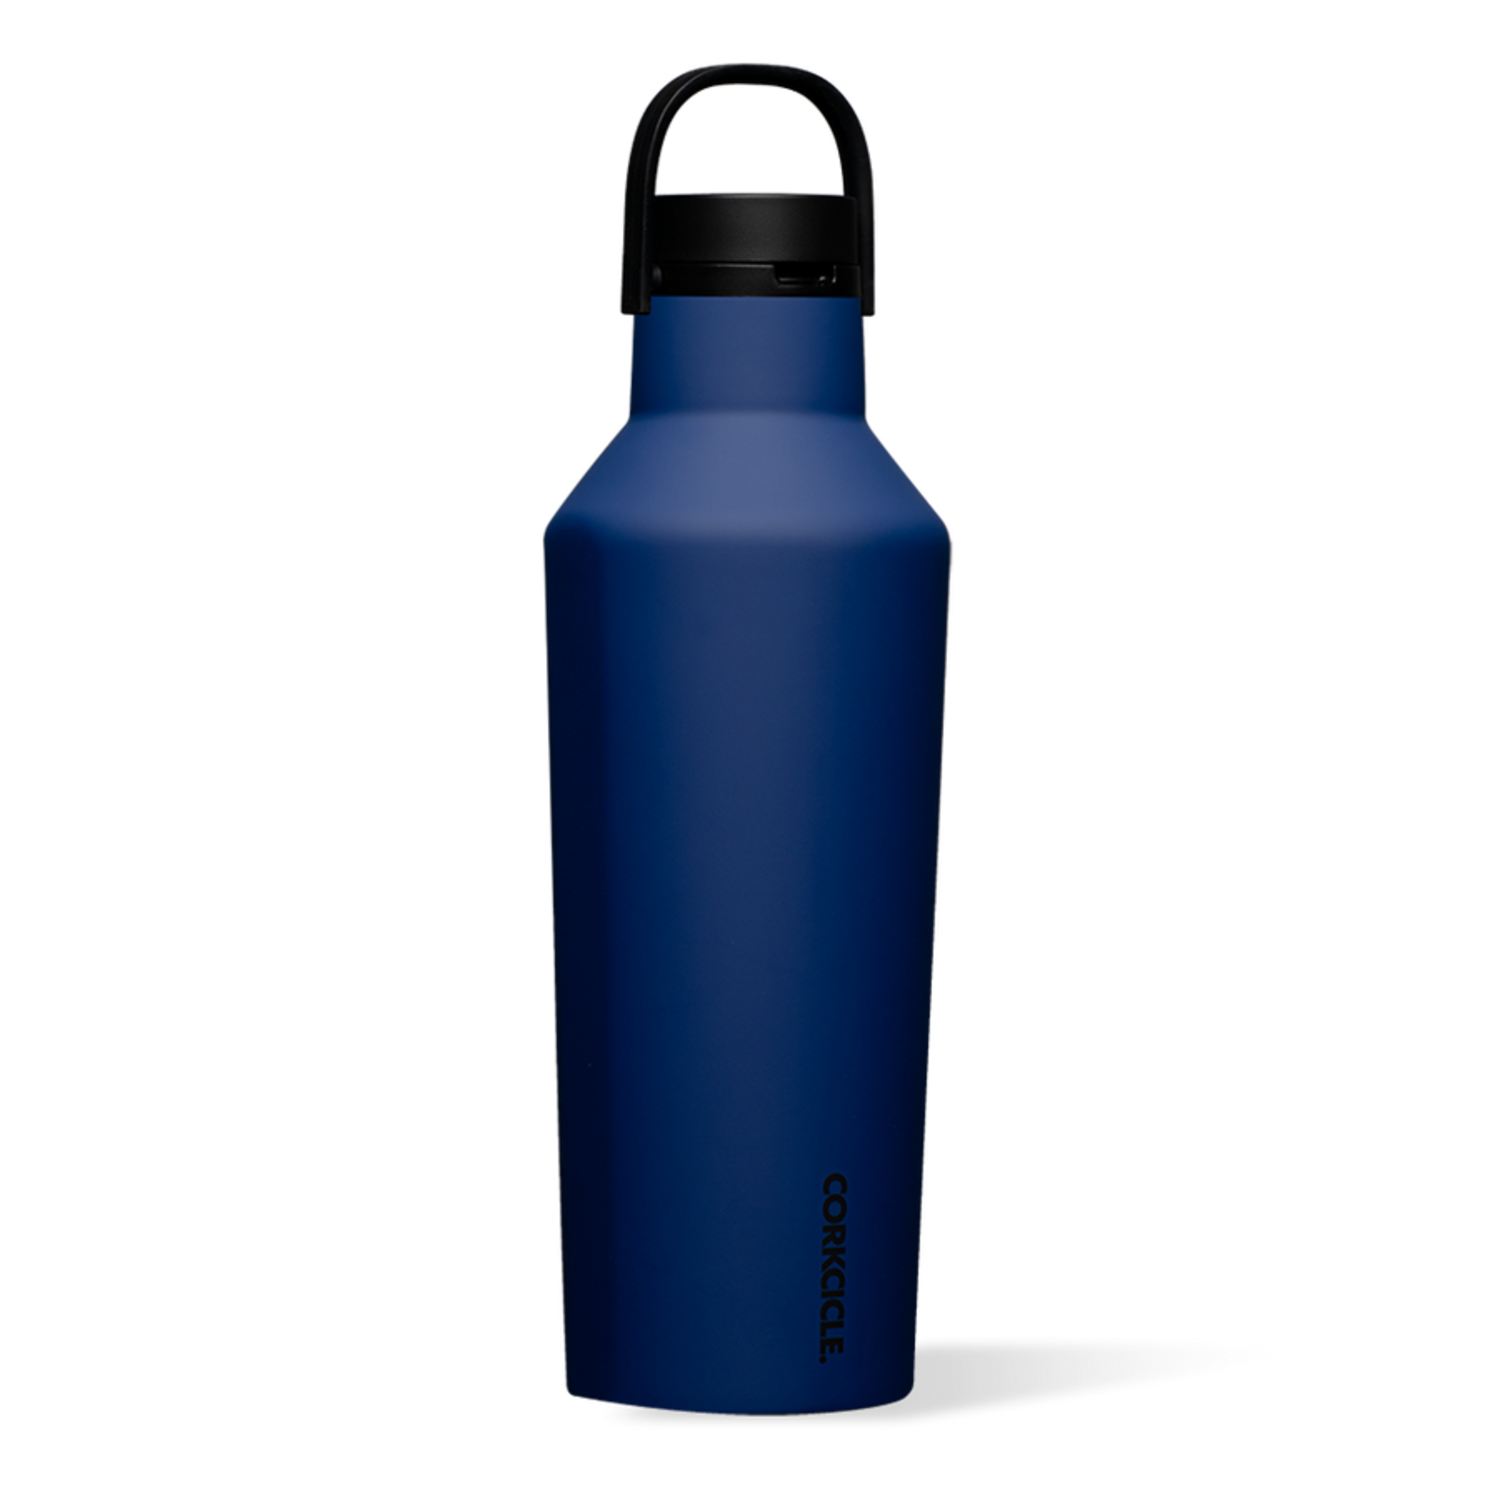 https://cdn.shoplightspeed.com/shops/606996/files/50556809/1500x4000x3/32oz-sport-canteen-water-bottle.jpg